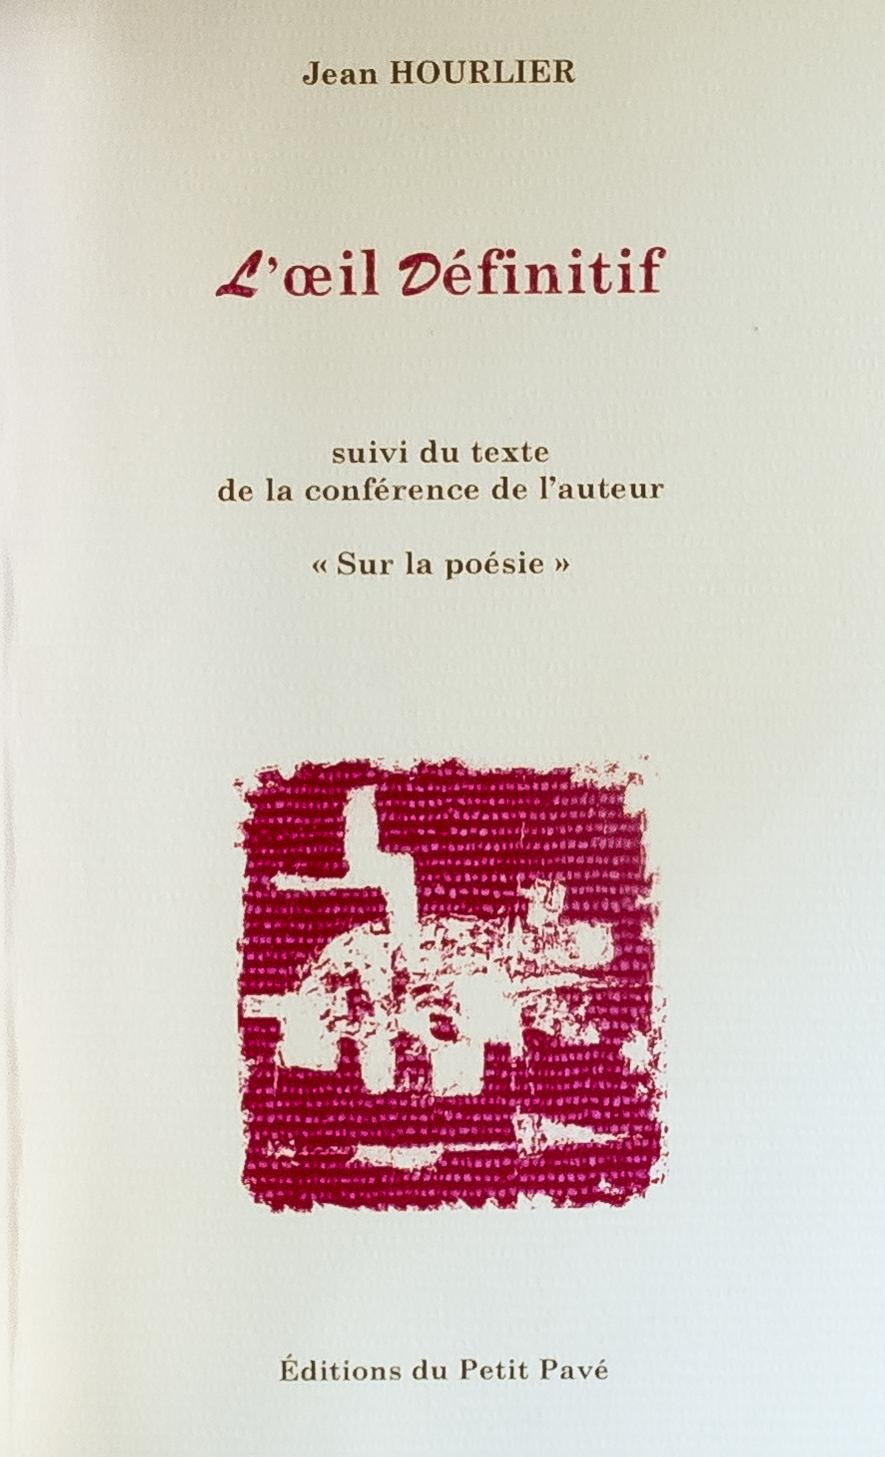 L’œil définitif, éditions du Petit Pavé, 2002, 72 pages. Le second recueil de poésie de Jean Hourlier comprend quatre peintures de Claude-Henry Pollet.